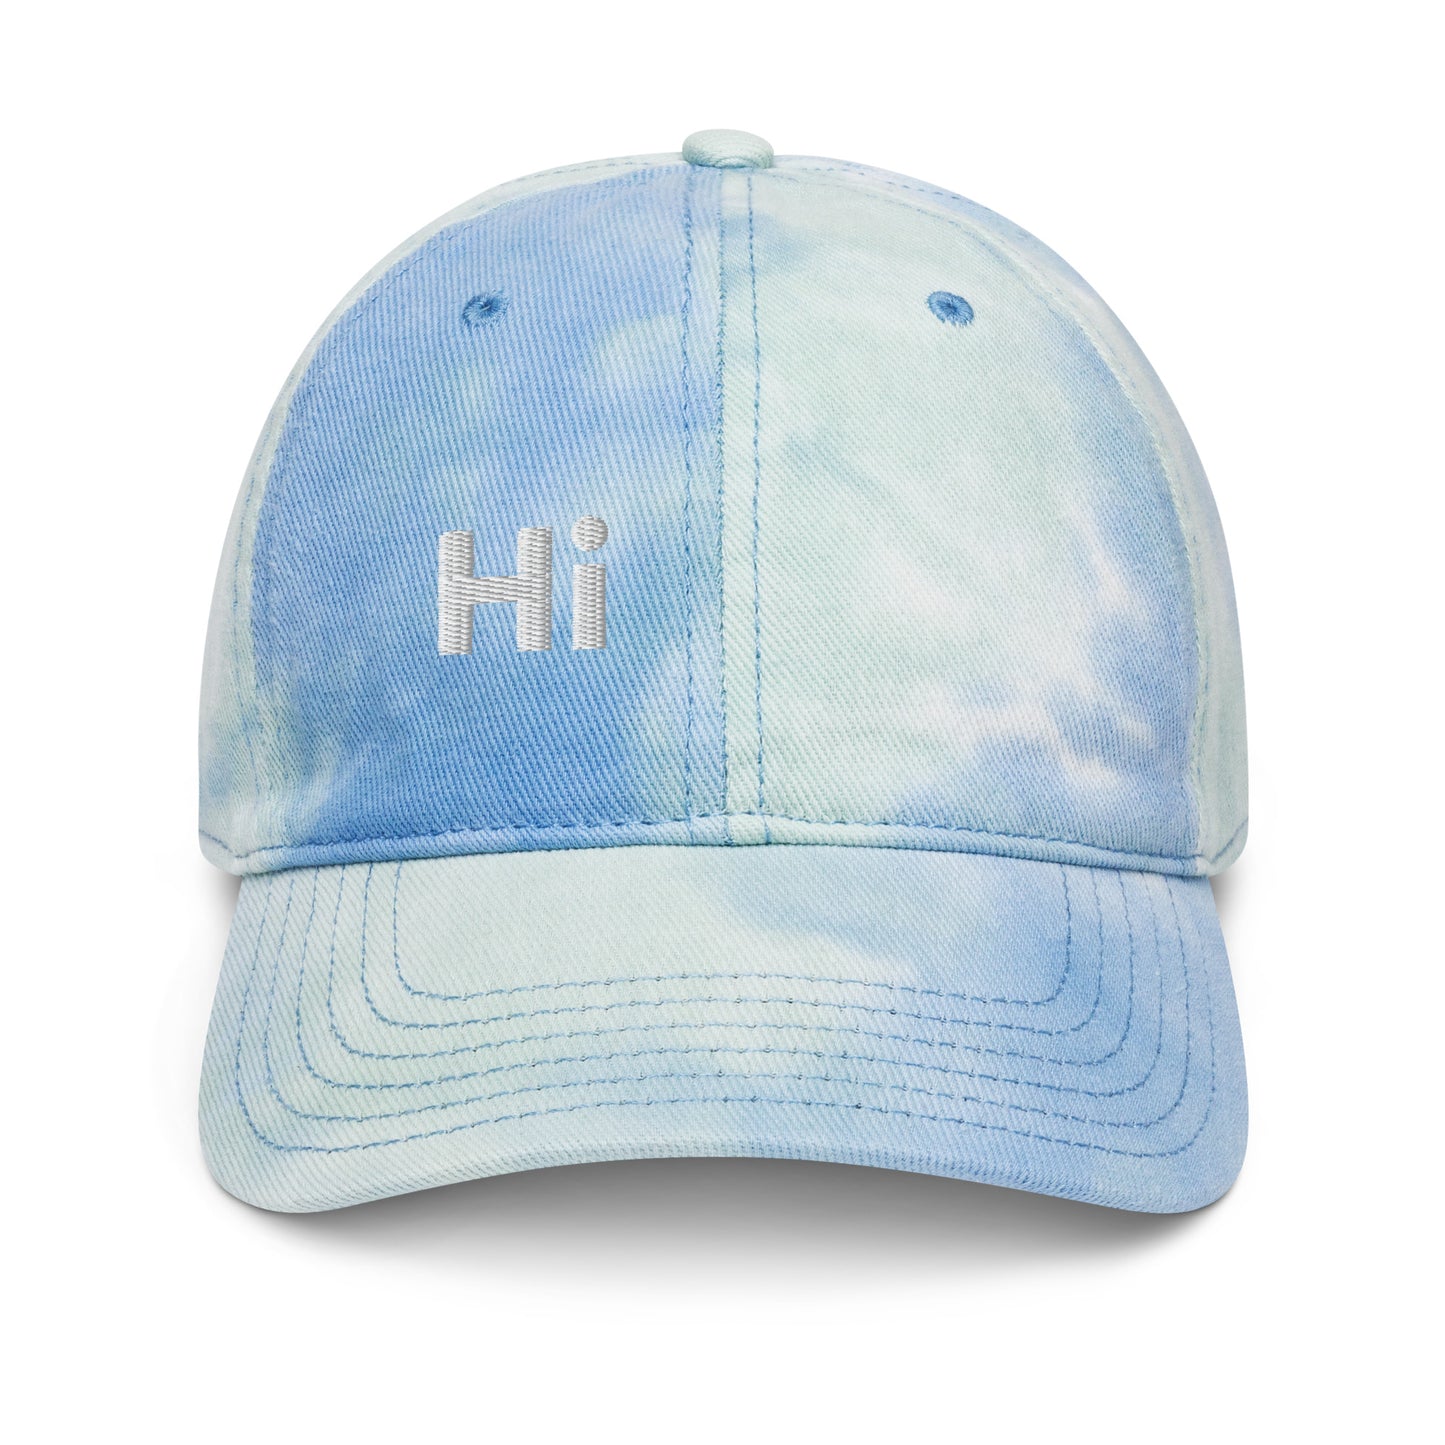 Hi & Ciao Tie-Dye Hat